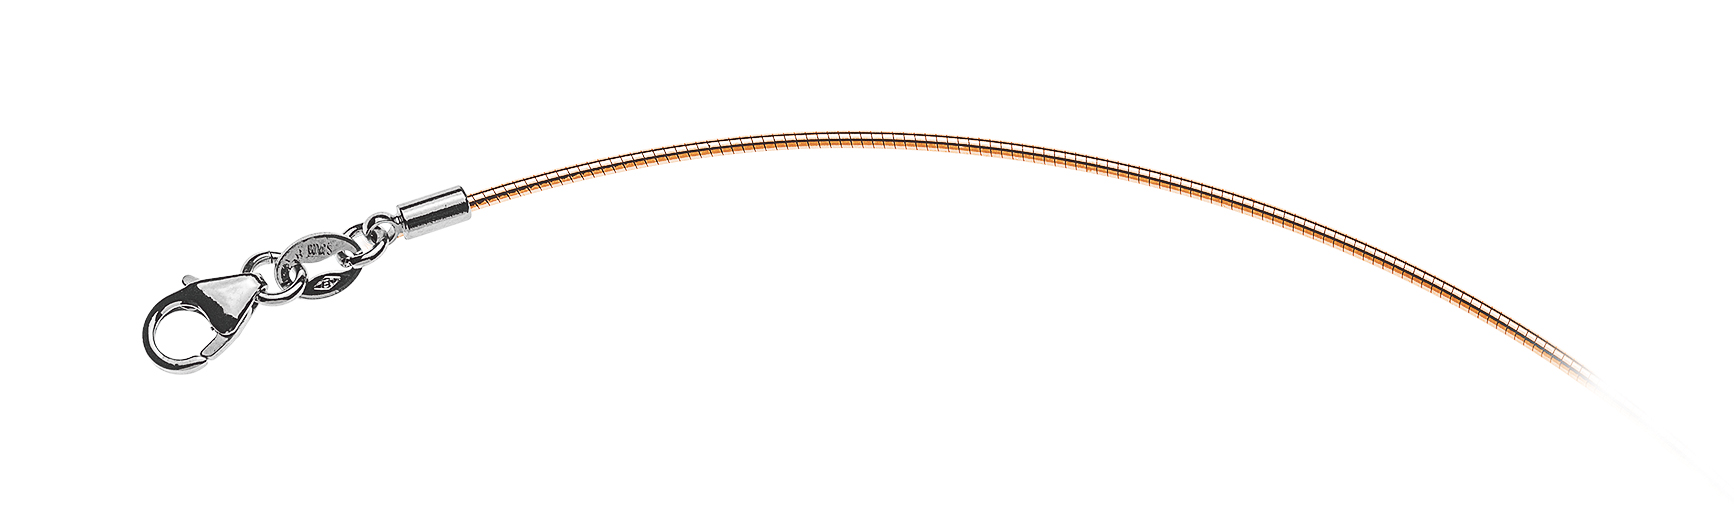 AURONOS Prestige Necklace rose gold 18K omega chain 40cm 1.0mm